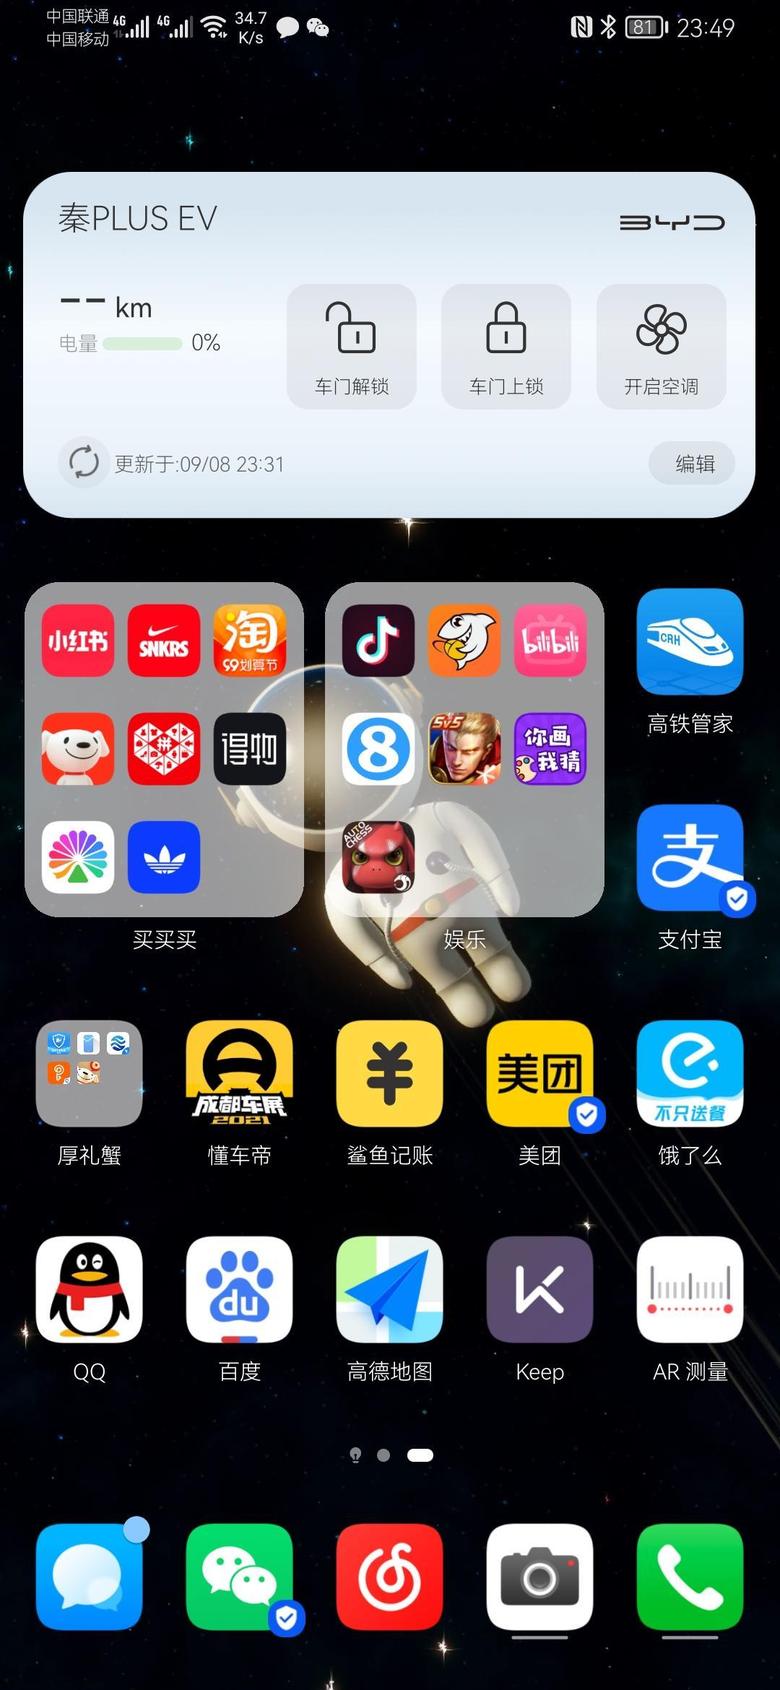 秦plus ev你们的app更新有出现bug吗